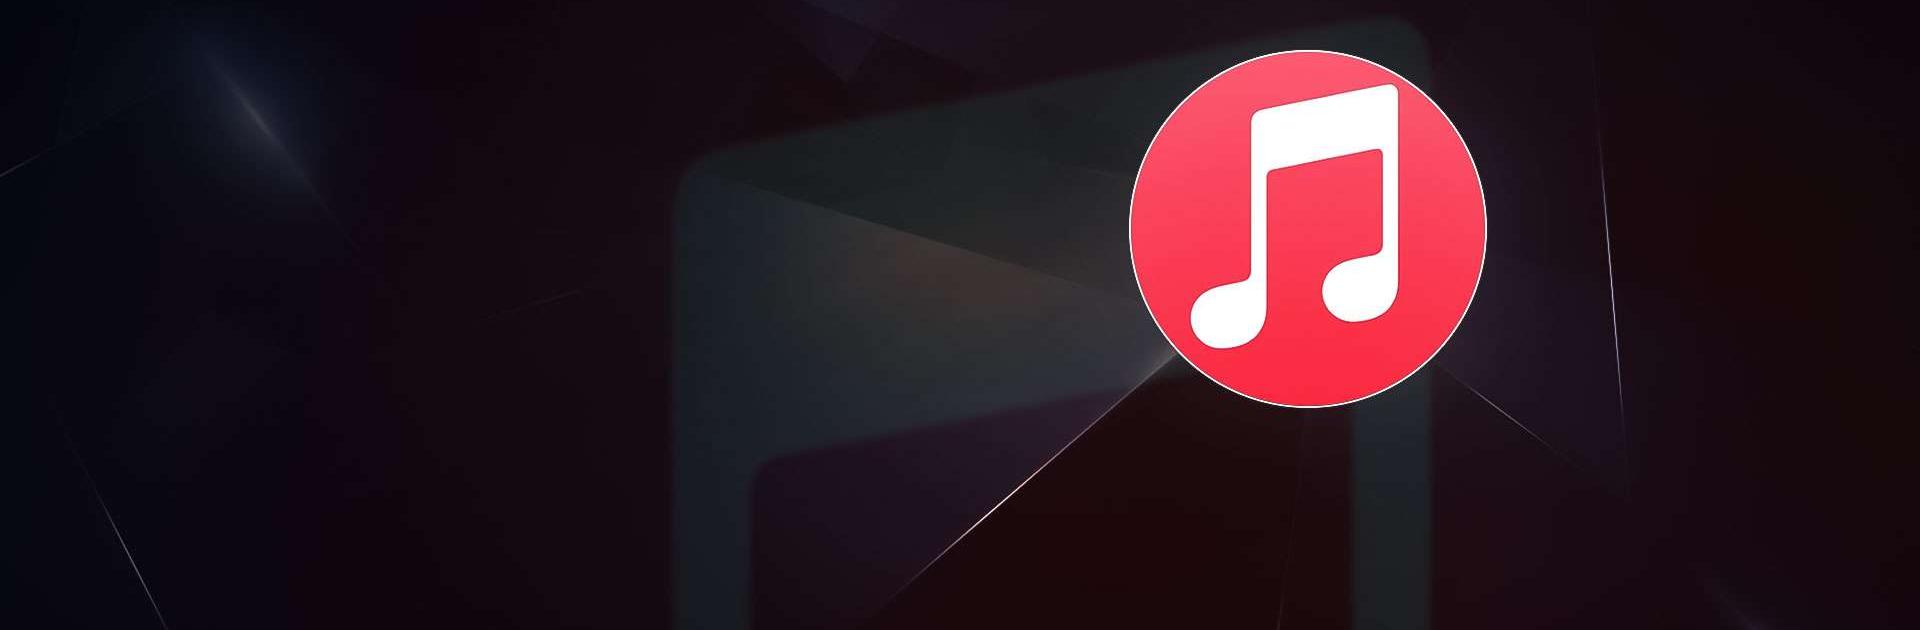 Télécharger  Music pour Windows, Mac, Web, iOS, Android -  Telecharger.com